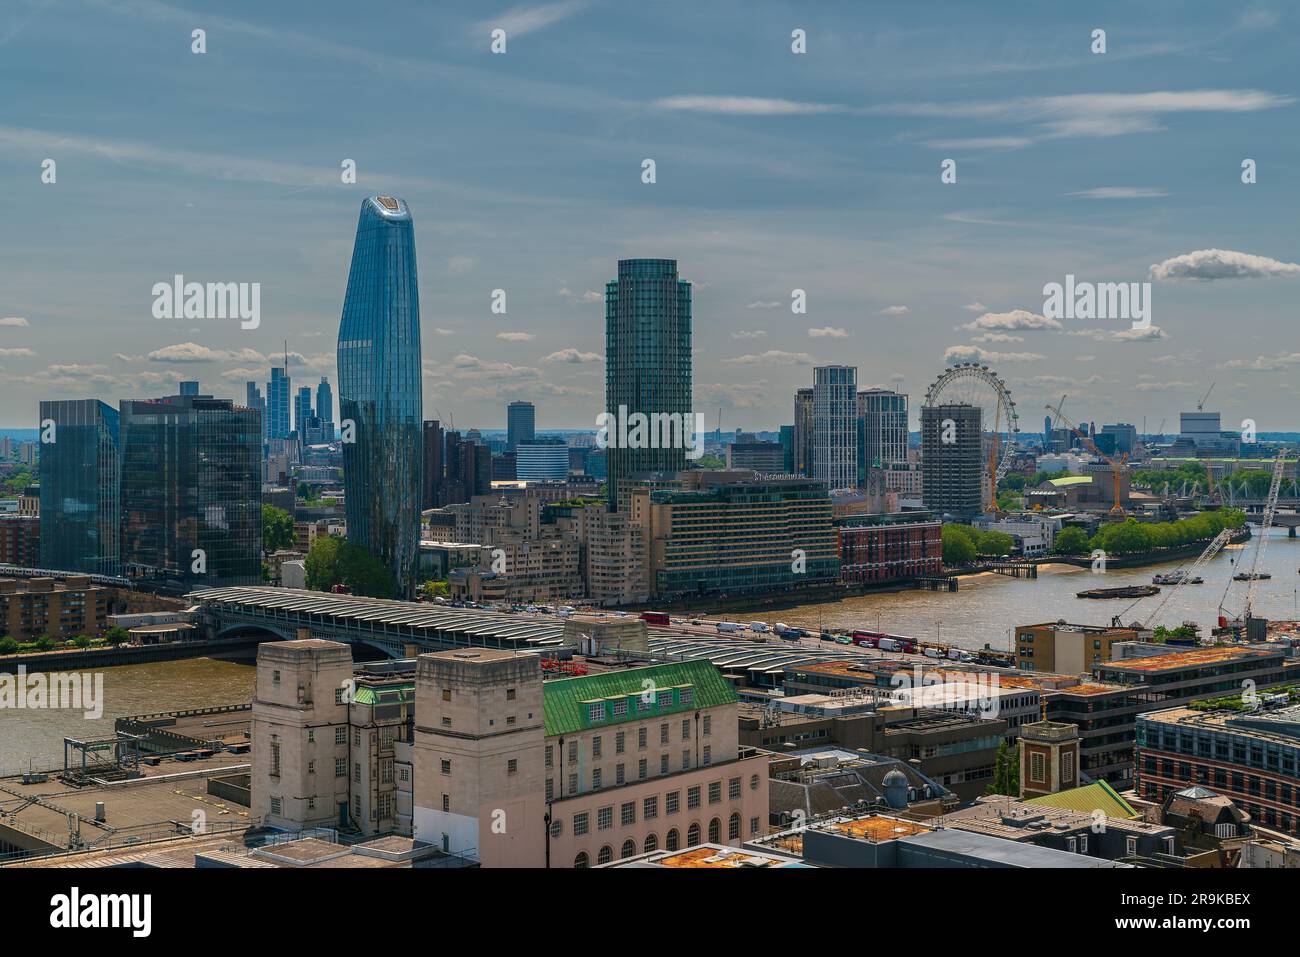 Panoramablick über die Stadt London mit Skyscapers. Herrlicher sonniger Tag mit etwas bewölktem Himmel. Stockfoto